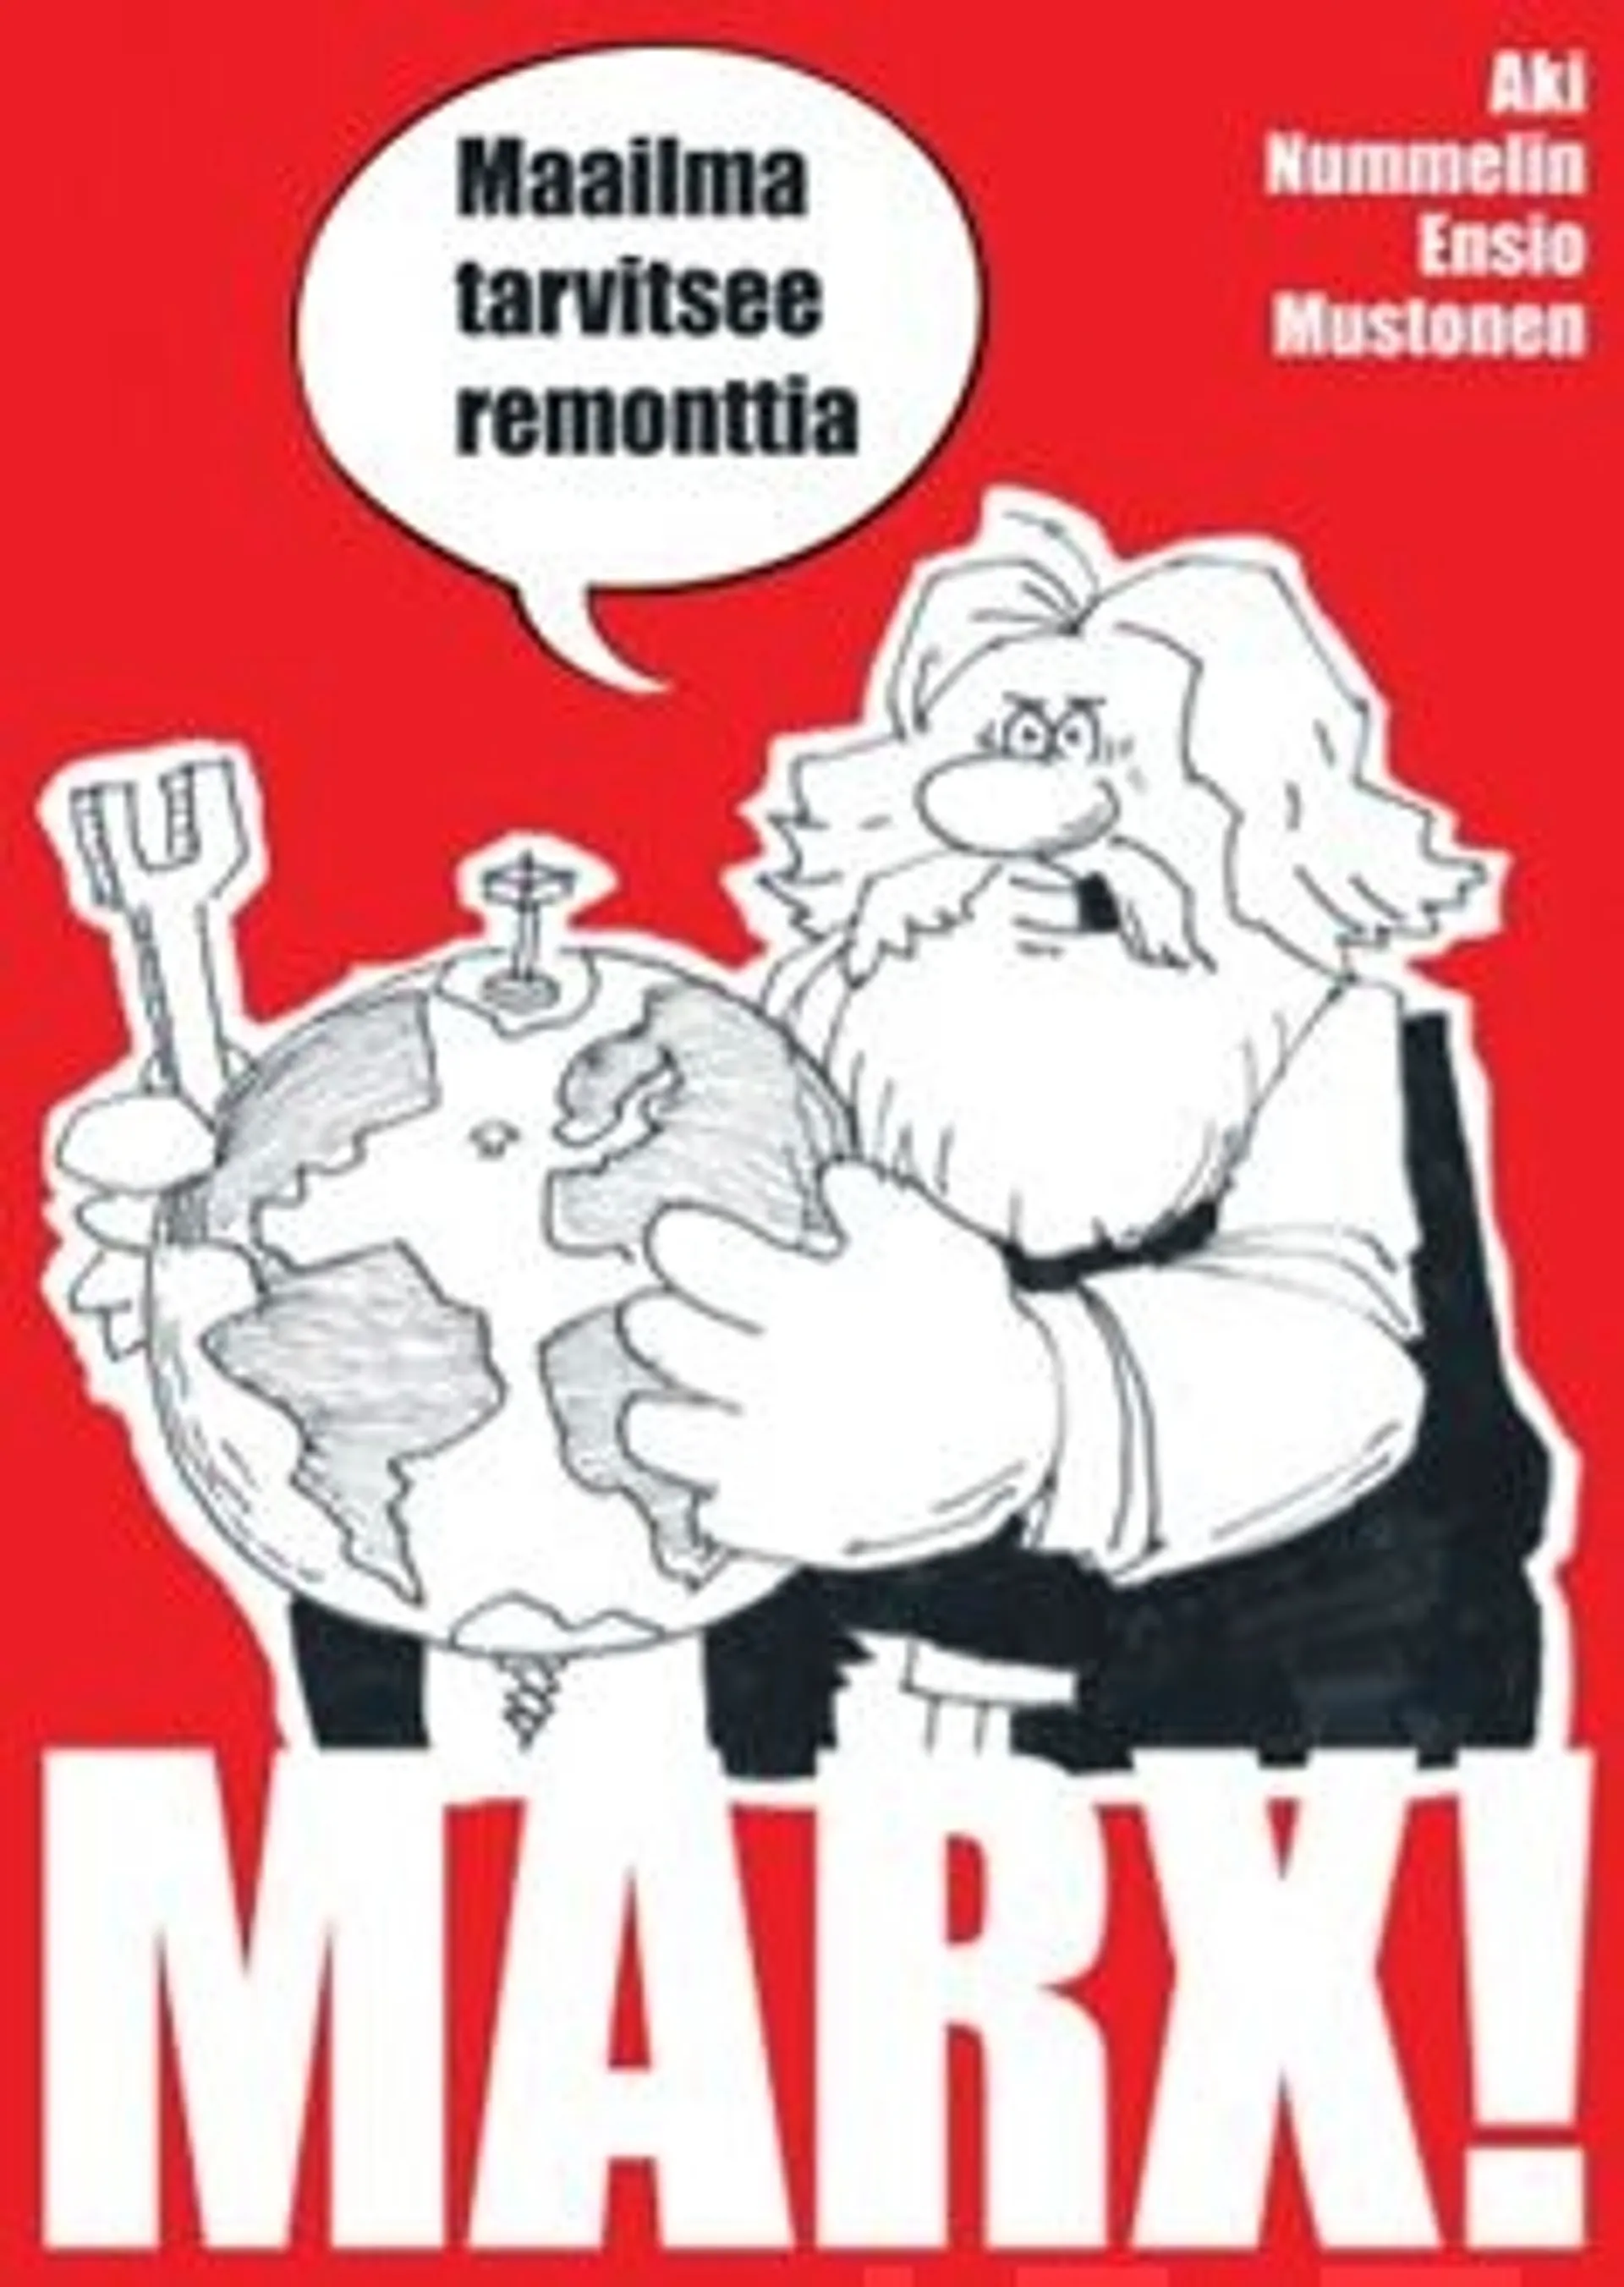 Nummelin, Marx!